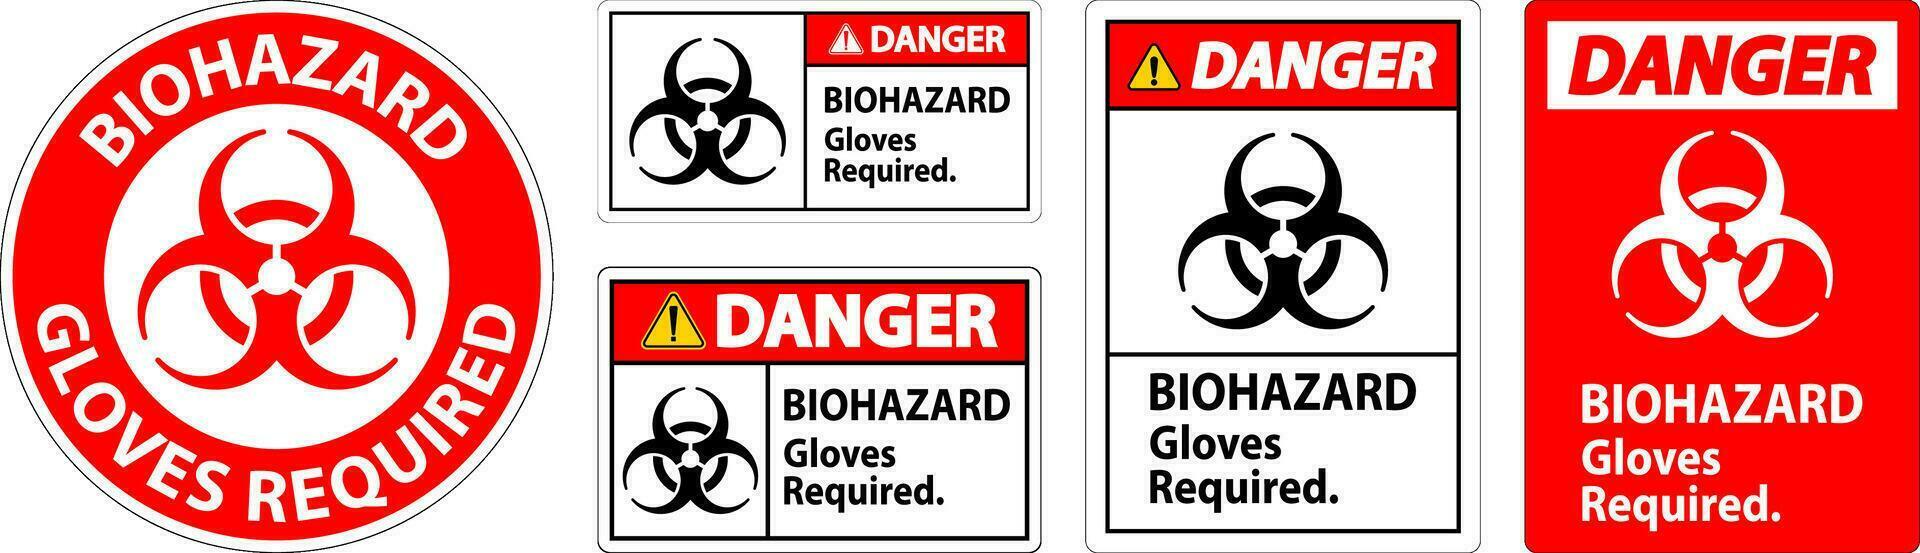 biohazard fara märka biohazard handskar nödvändig vektor